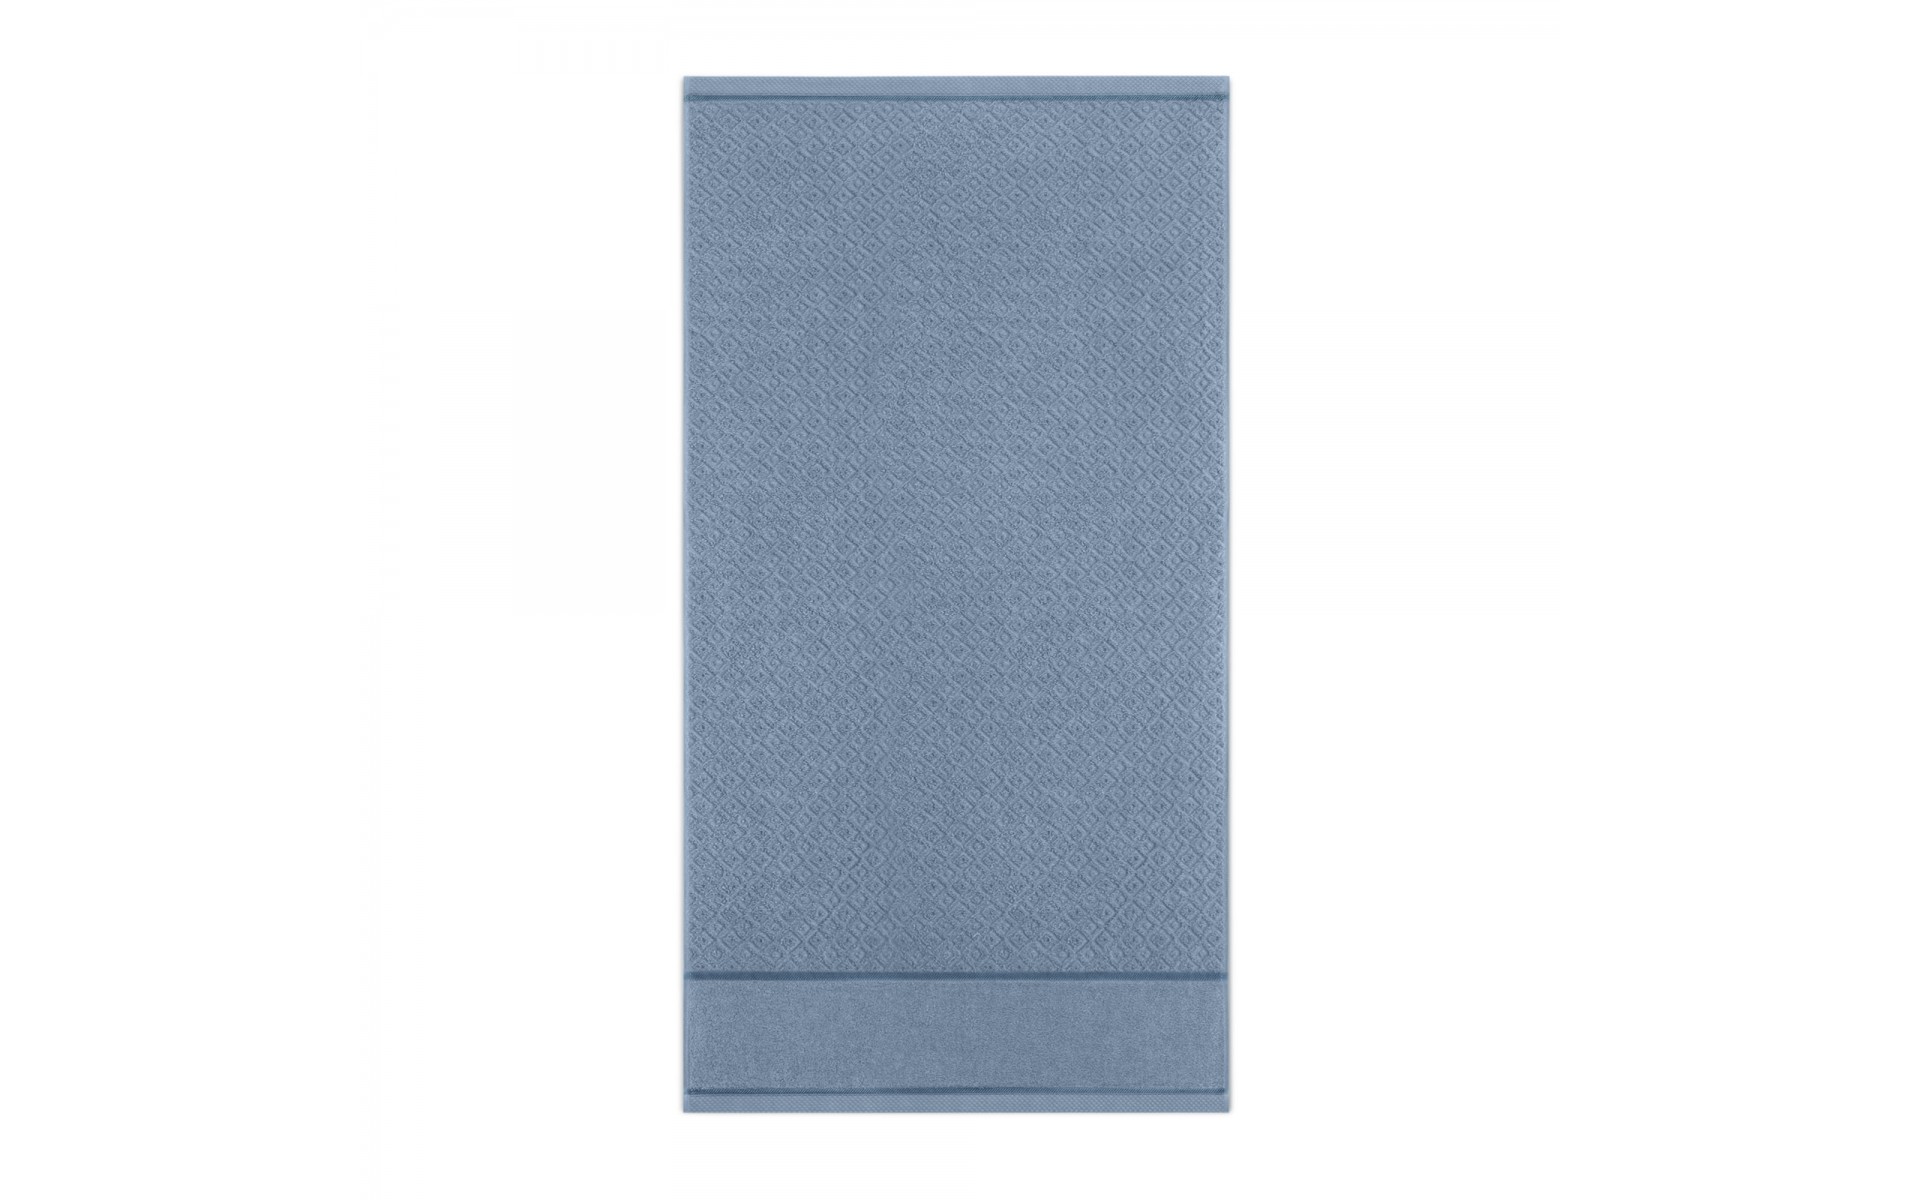 ręcznik MAKAO AB niebieski-ne - 10079